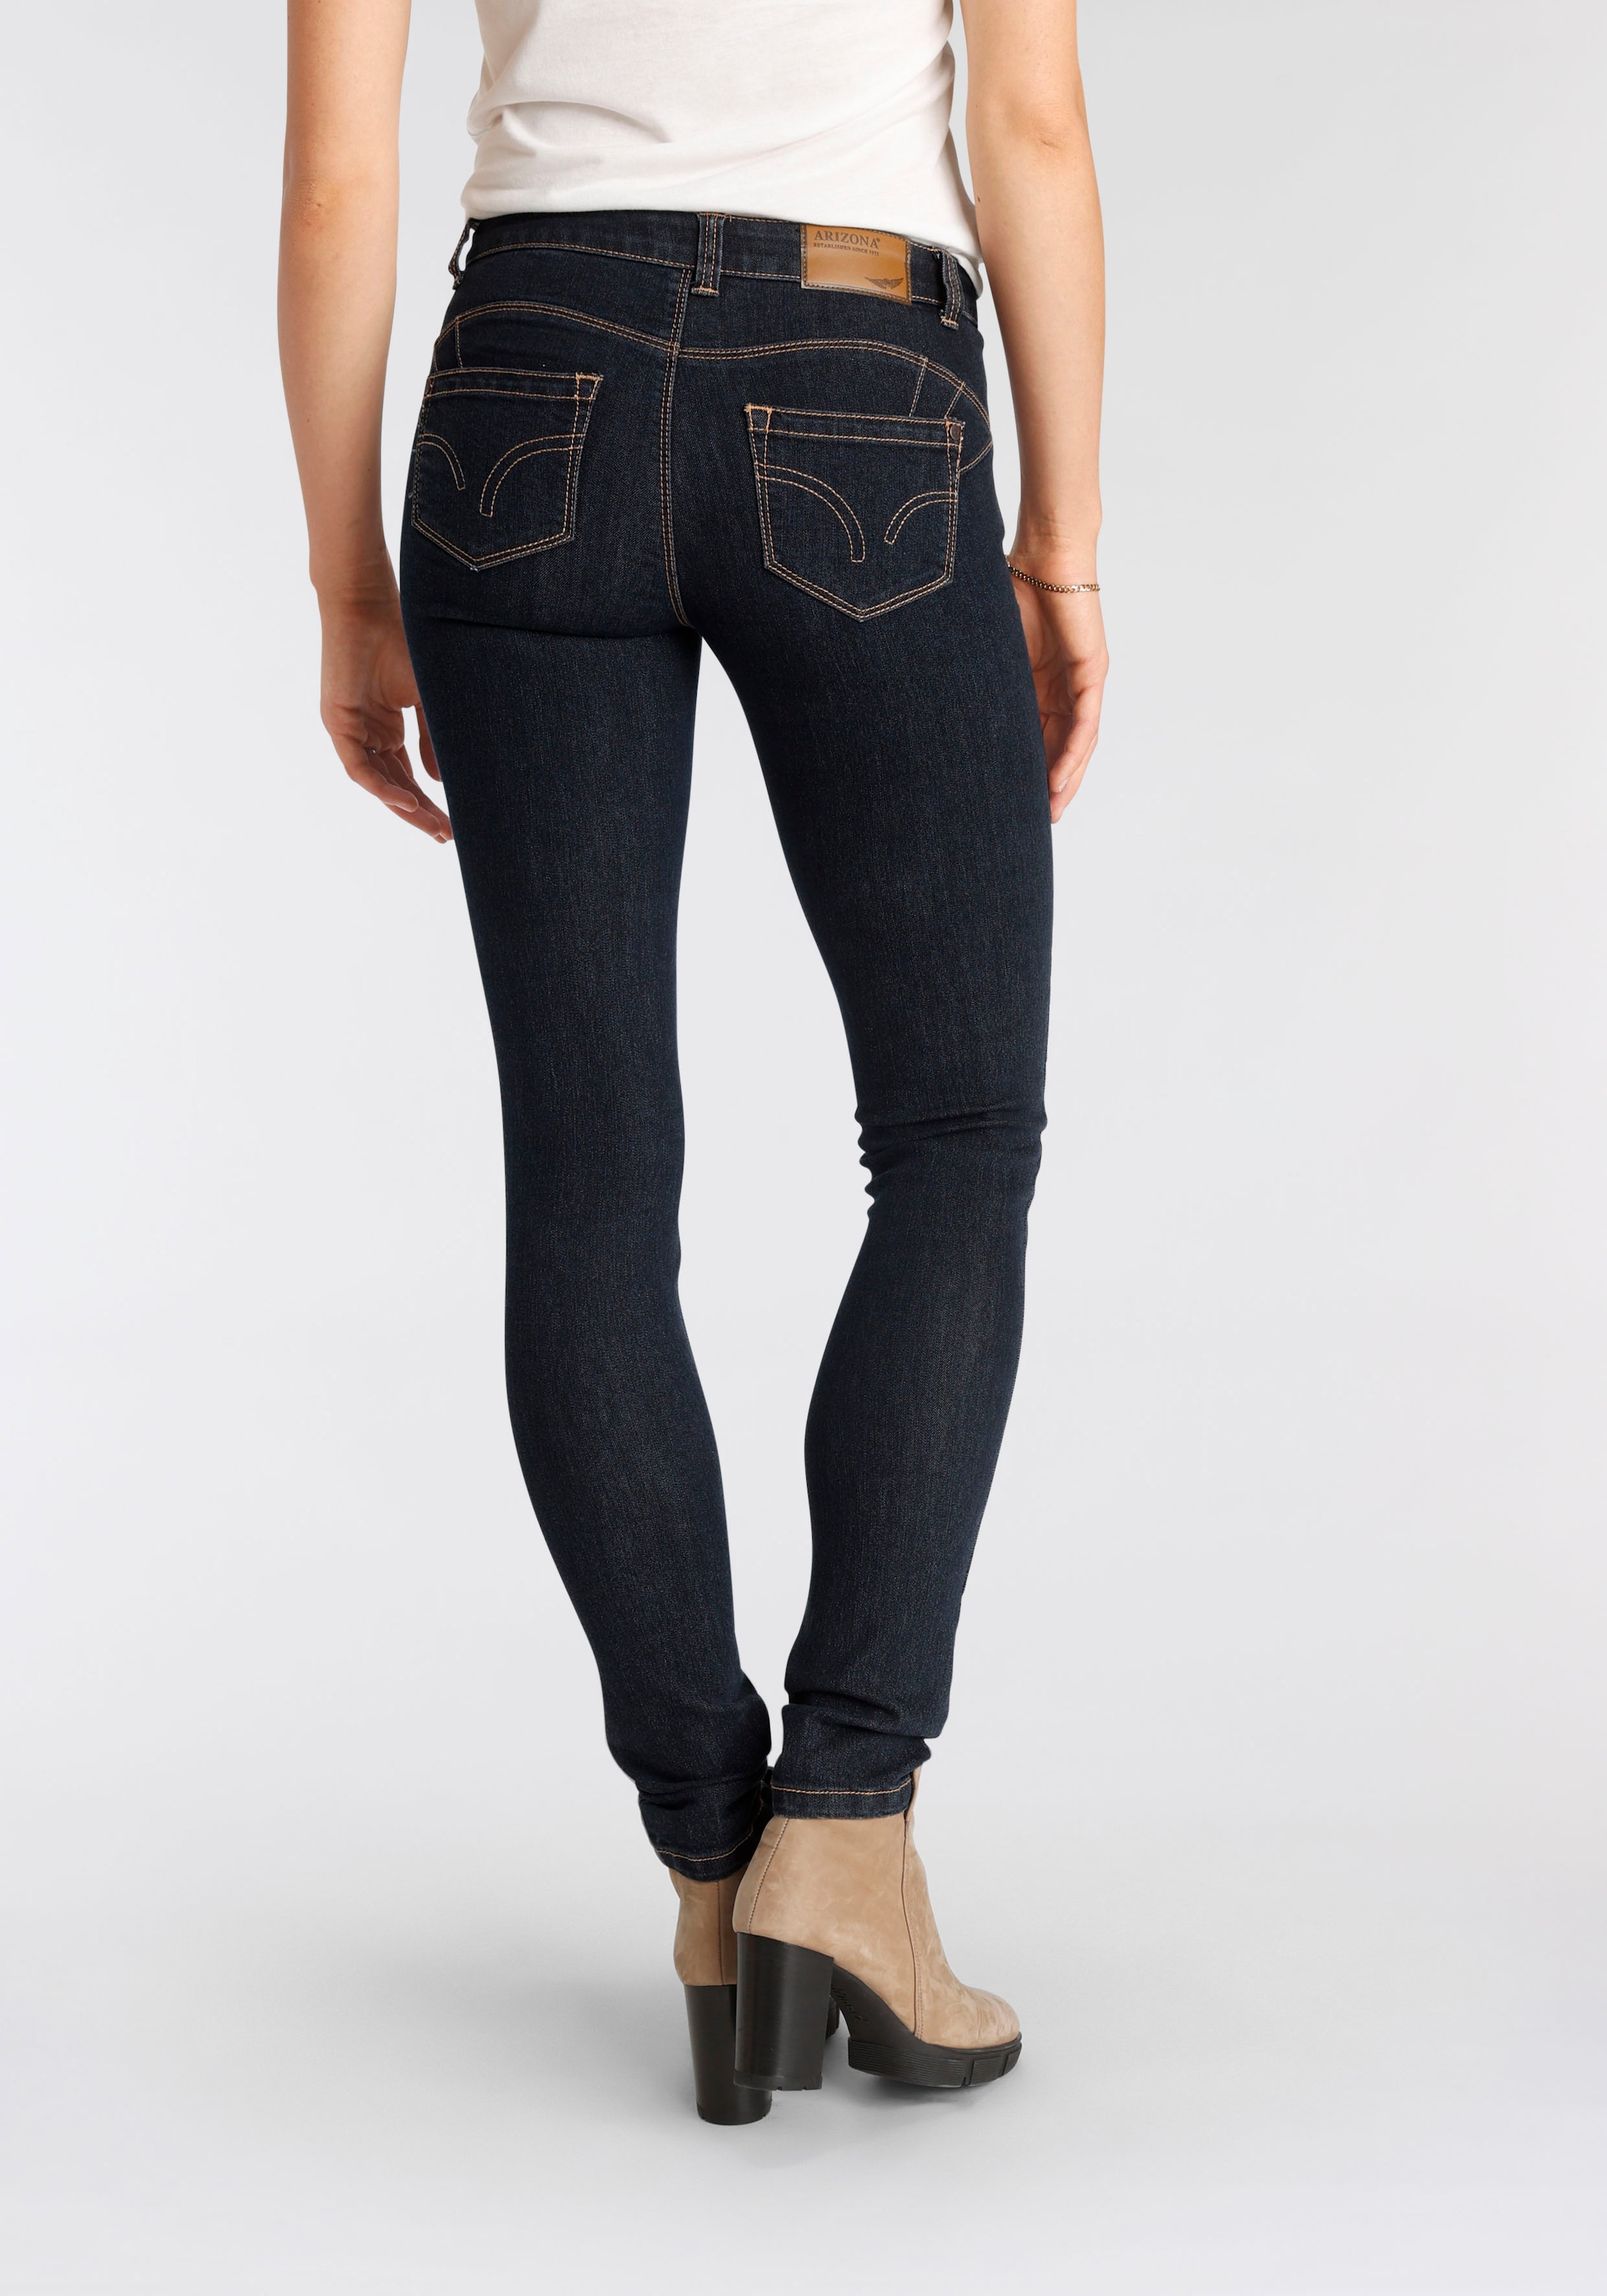 Nachhaltige Damenmode günstige bestellen - Jeans online